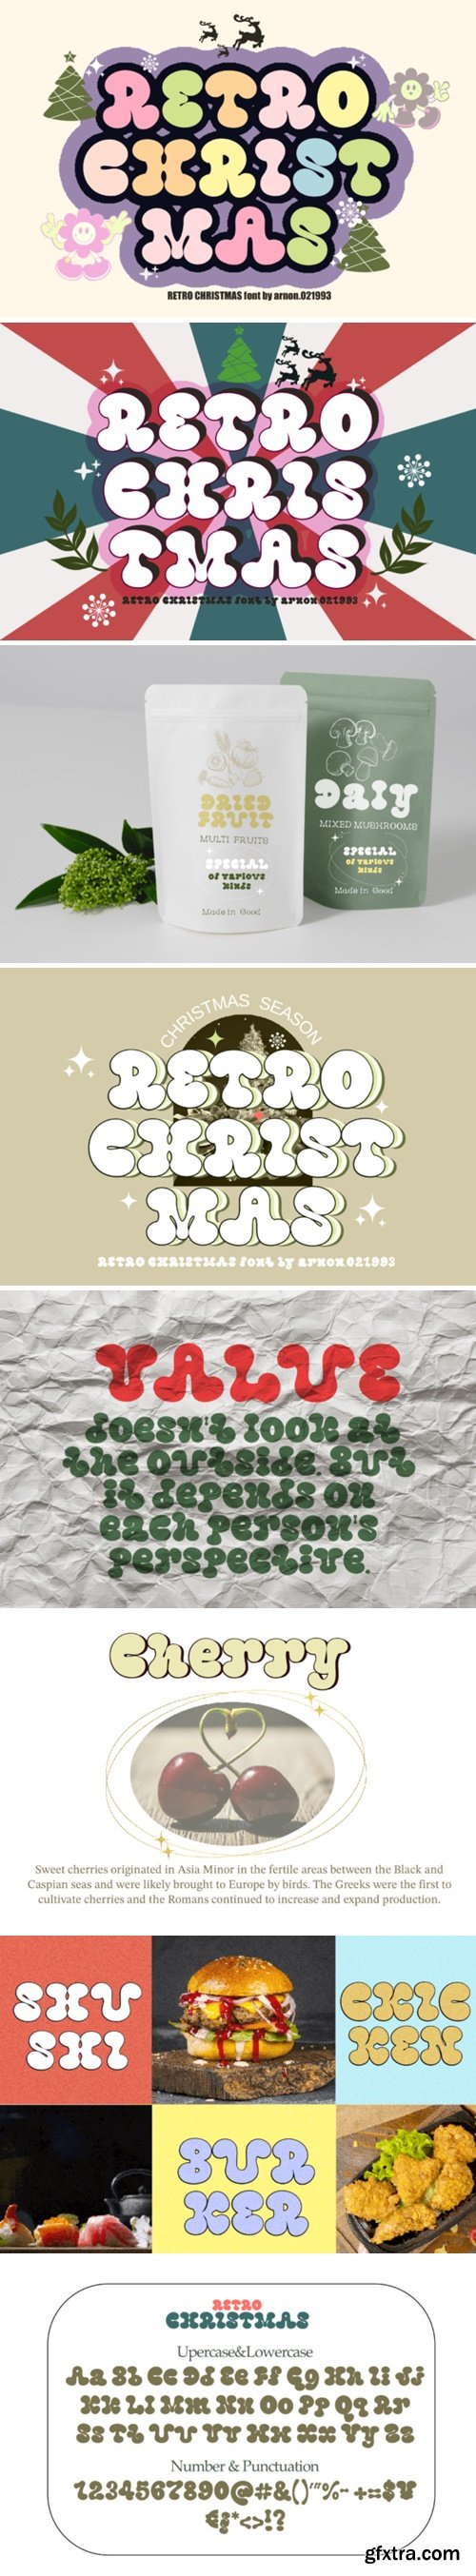 Retro Christmas Font